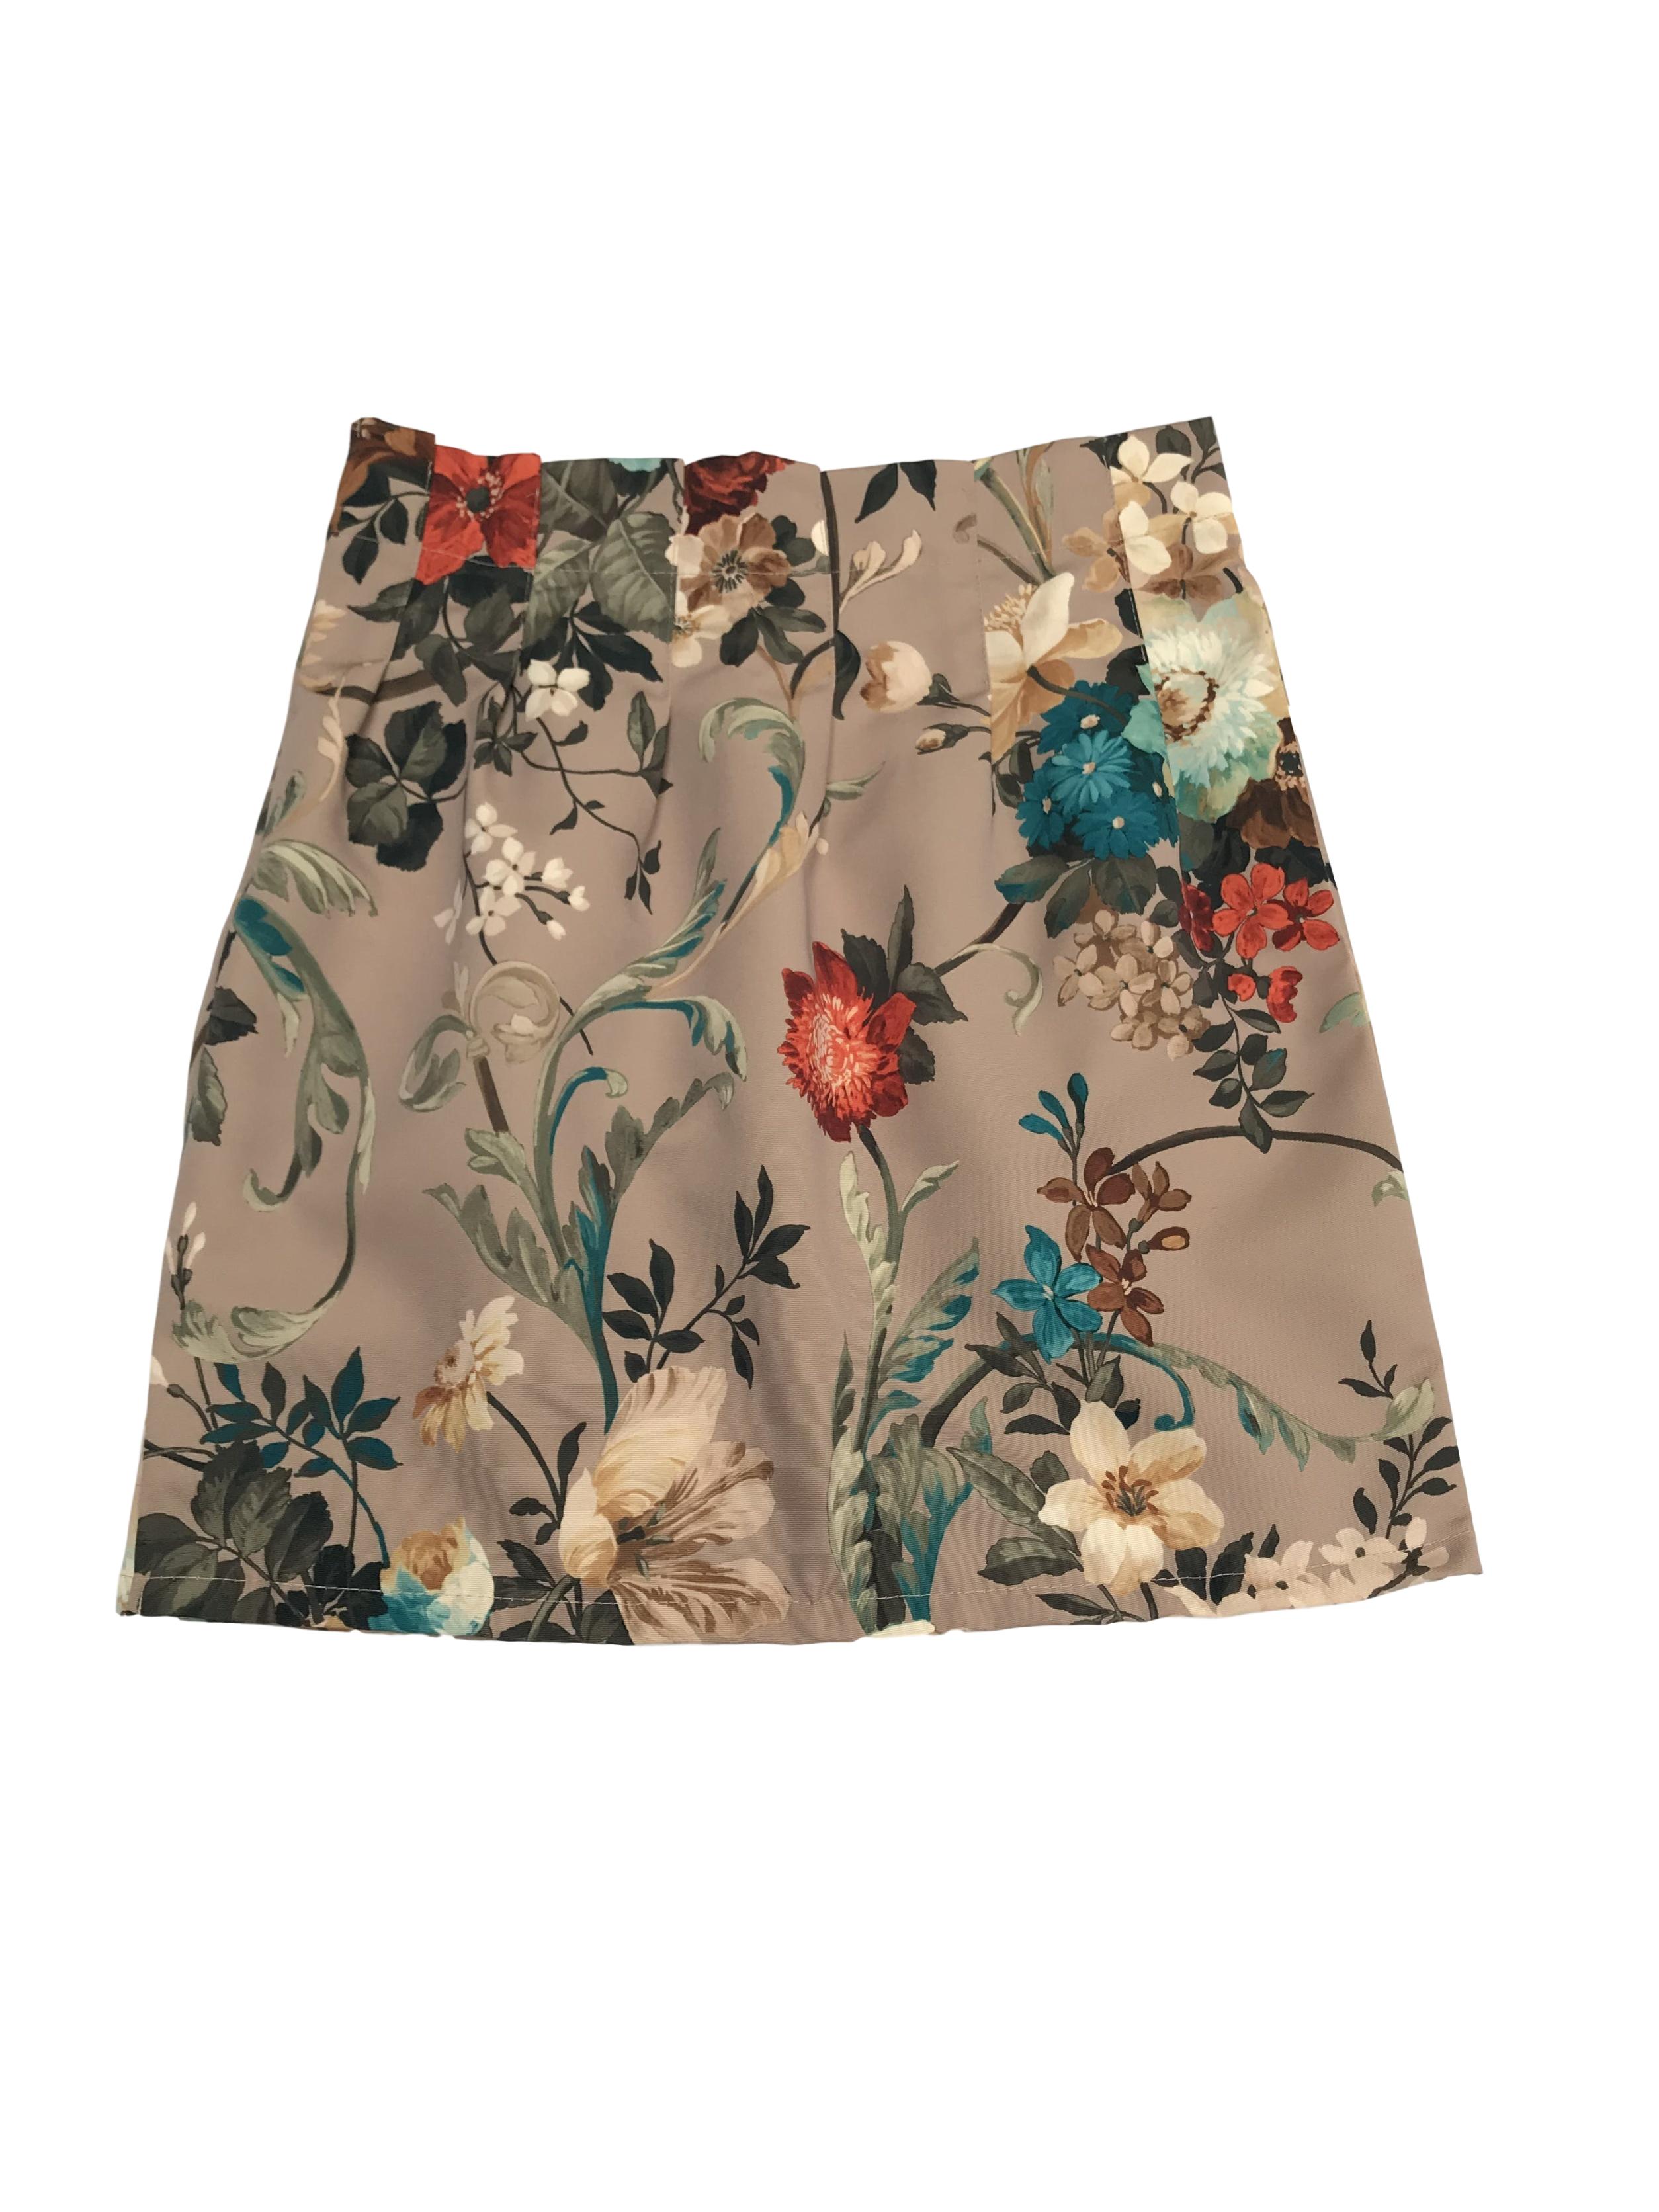 Falda beige con estampado de flores de colores, con pliegues y cierre lateral. Pretina 78cm Largo 50cm